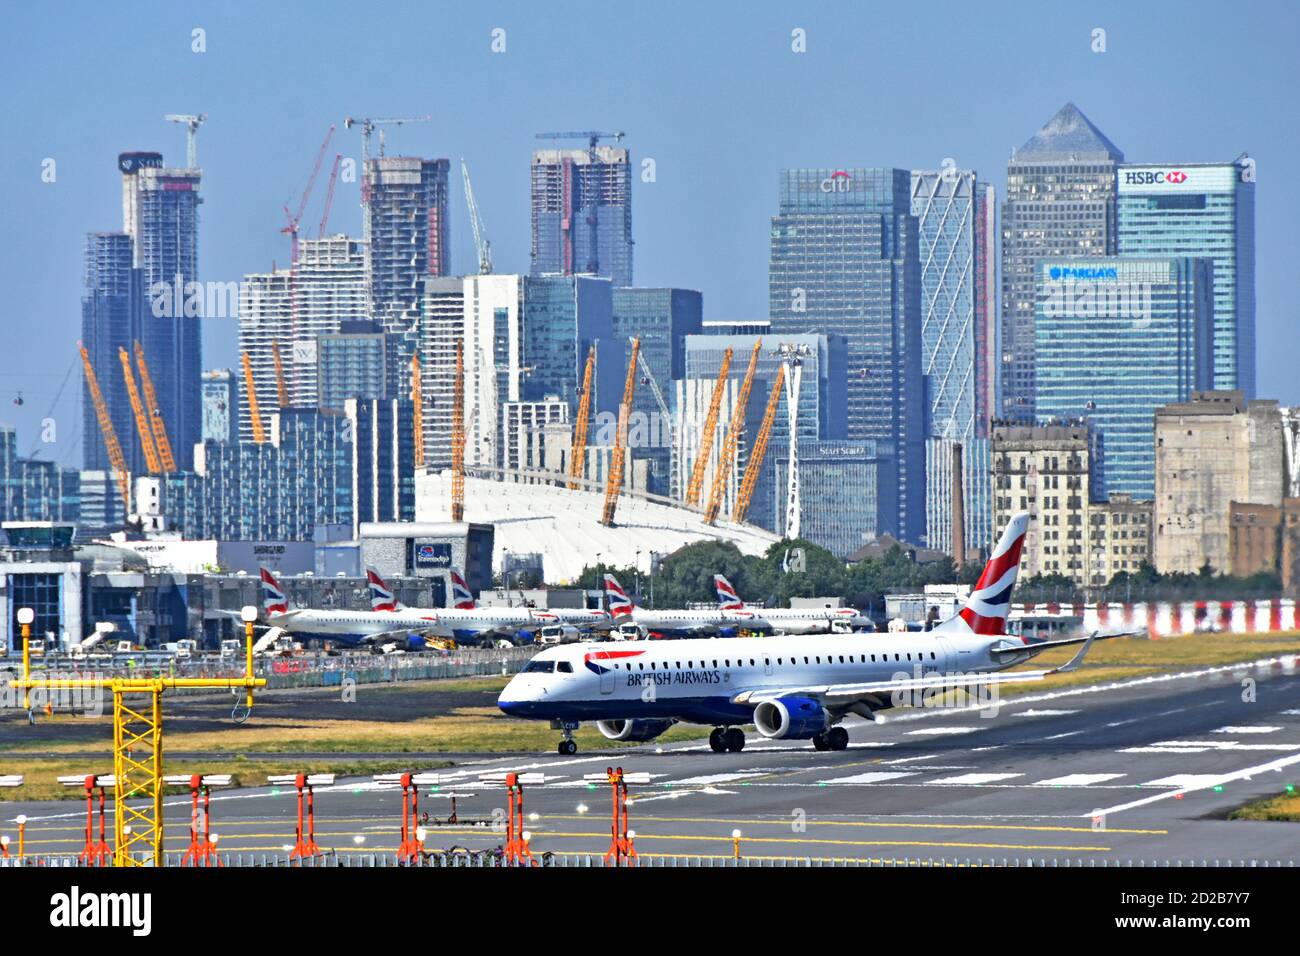 L'avion de British Airways tourne sur la piste de l'aéroport de London City pour Départ pour un voyage d'affaires depuis Canary Wharf East London Docklands Angleterre Royaume-Uni Banque D'Images